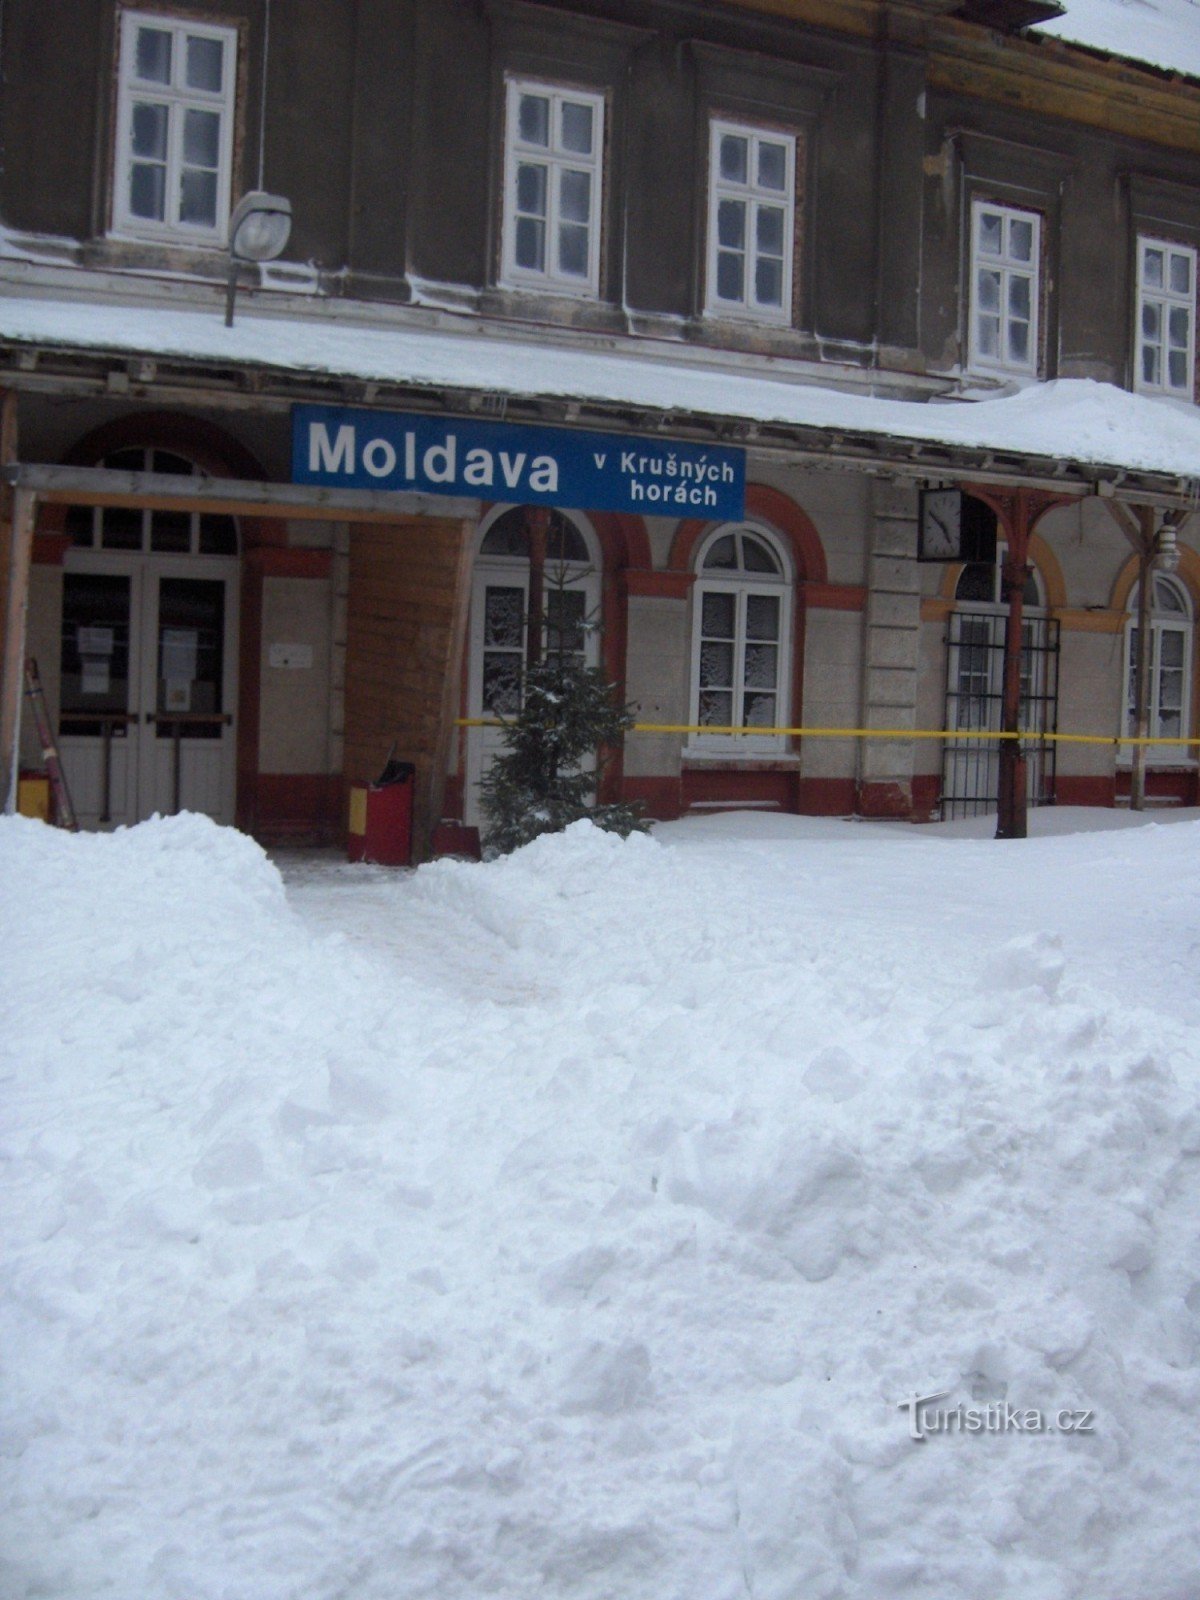 摩尔达瓦火车站